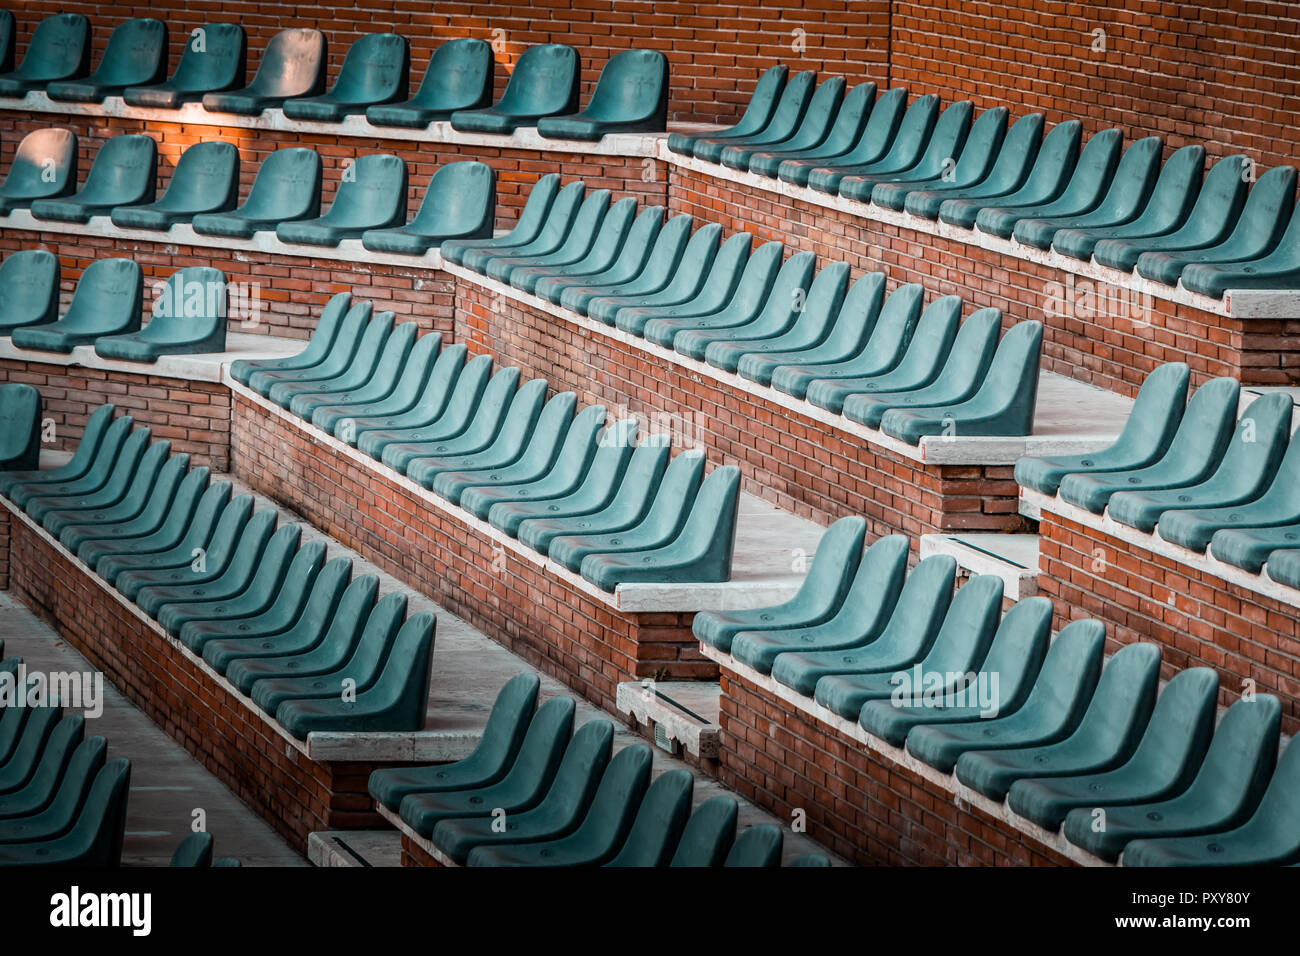 Kostenlose unclaimed Sitze in mehreren Reihen. Sonnenuntergang Foto in leeren öffentlichen Arena und Konzert Amphitheater. Aus roten Backsteinen und weißem Travertin Struktur. Stockfoto